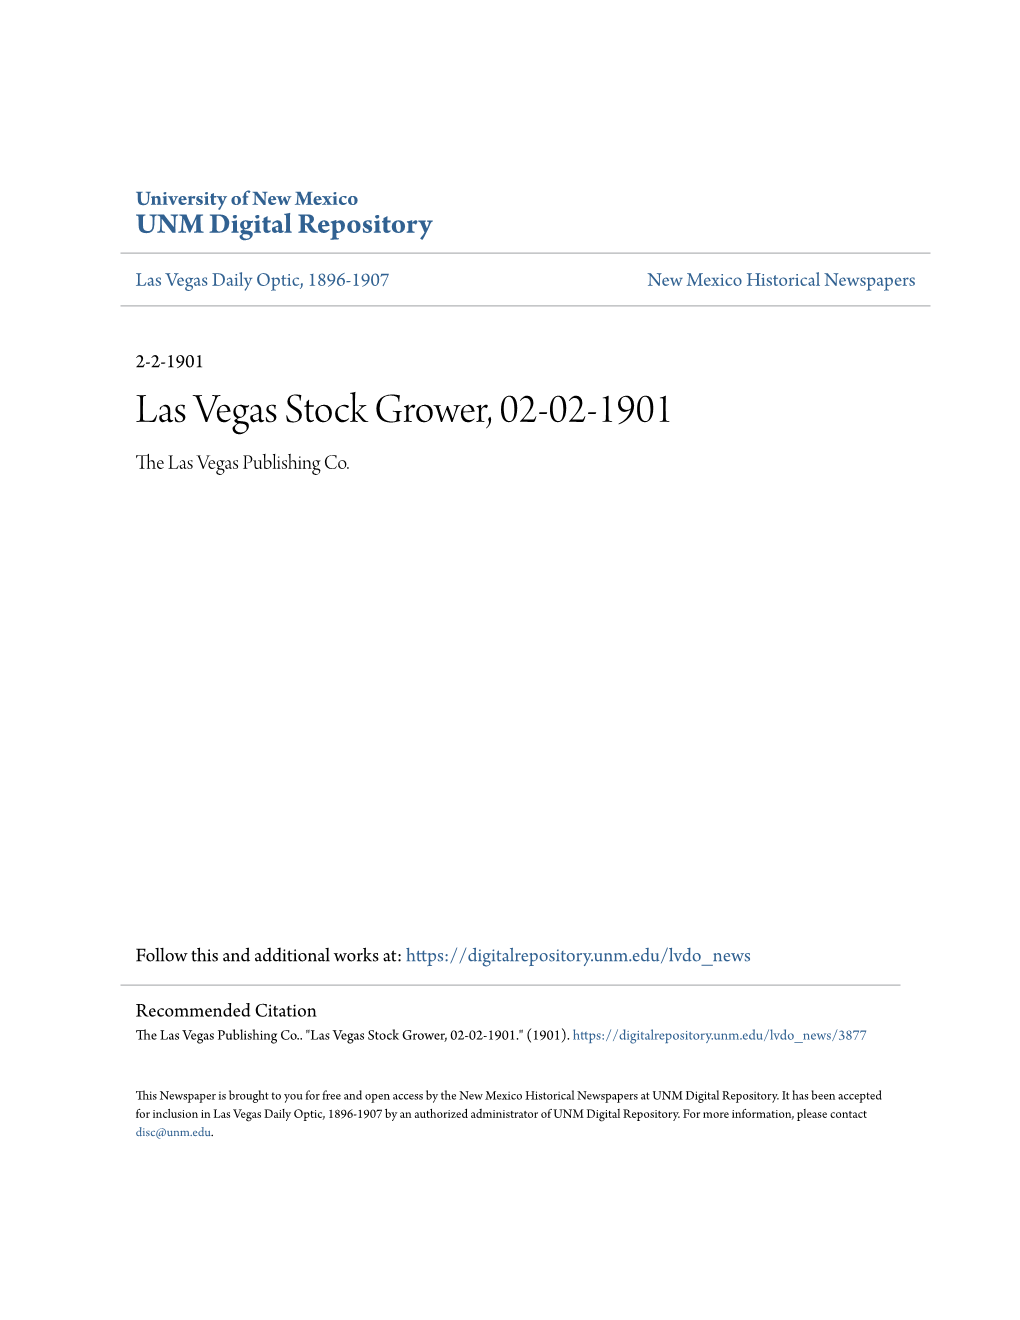 Las Vegas Stock Grower, 02-02-1901 the Las Vegas Publishing Co